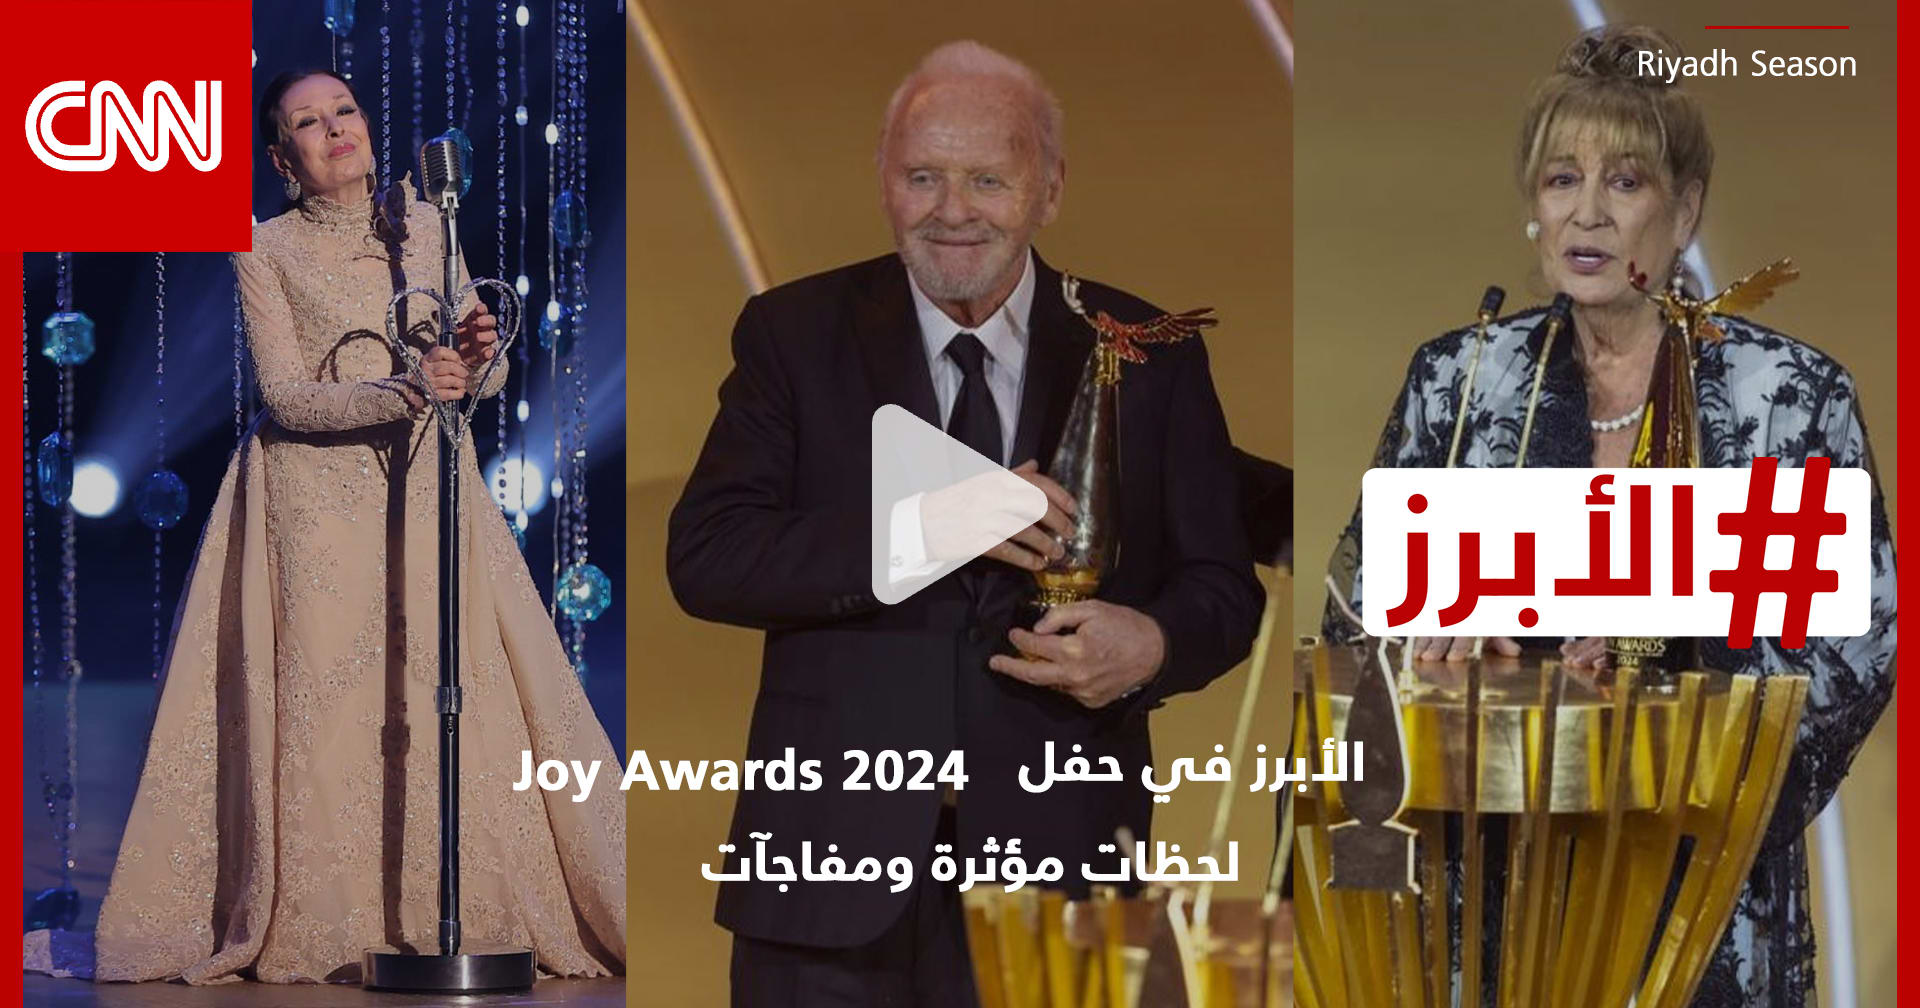 الأبرز في حفل Joy Awards 2024: لحظات مؤثرة ومفاجآت